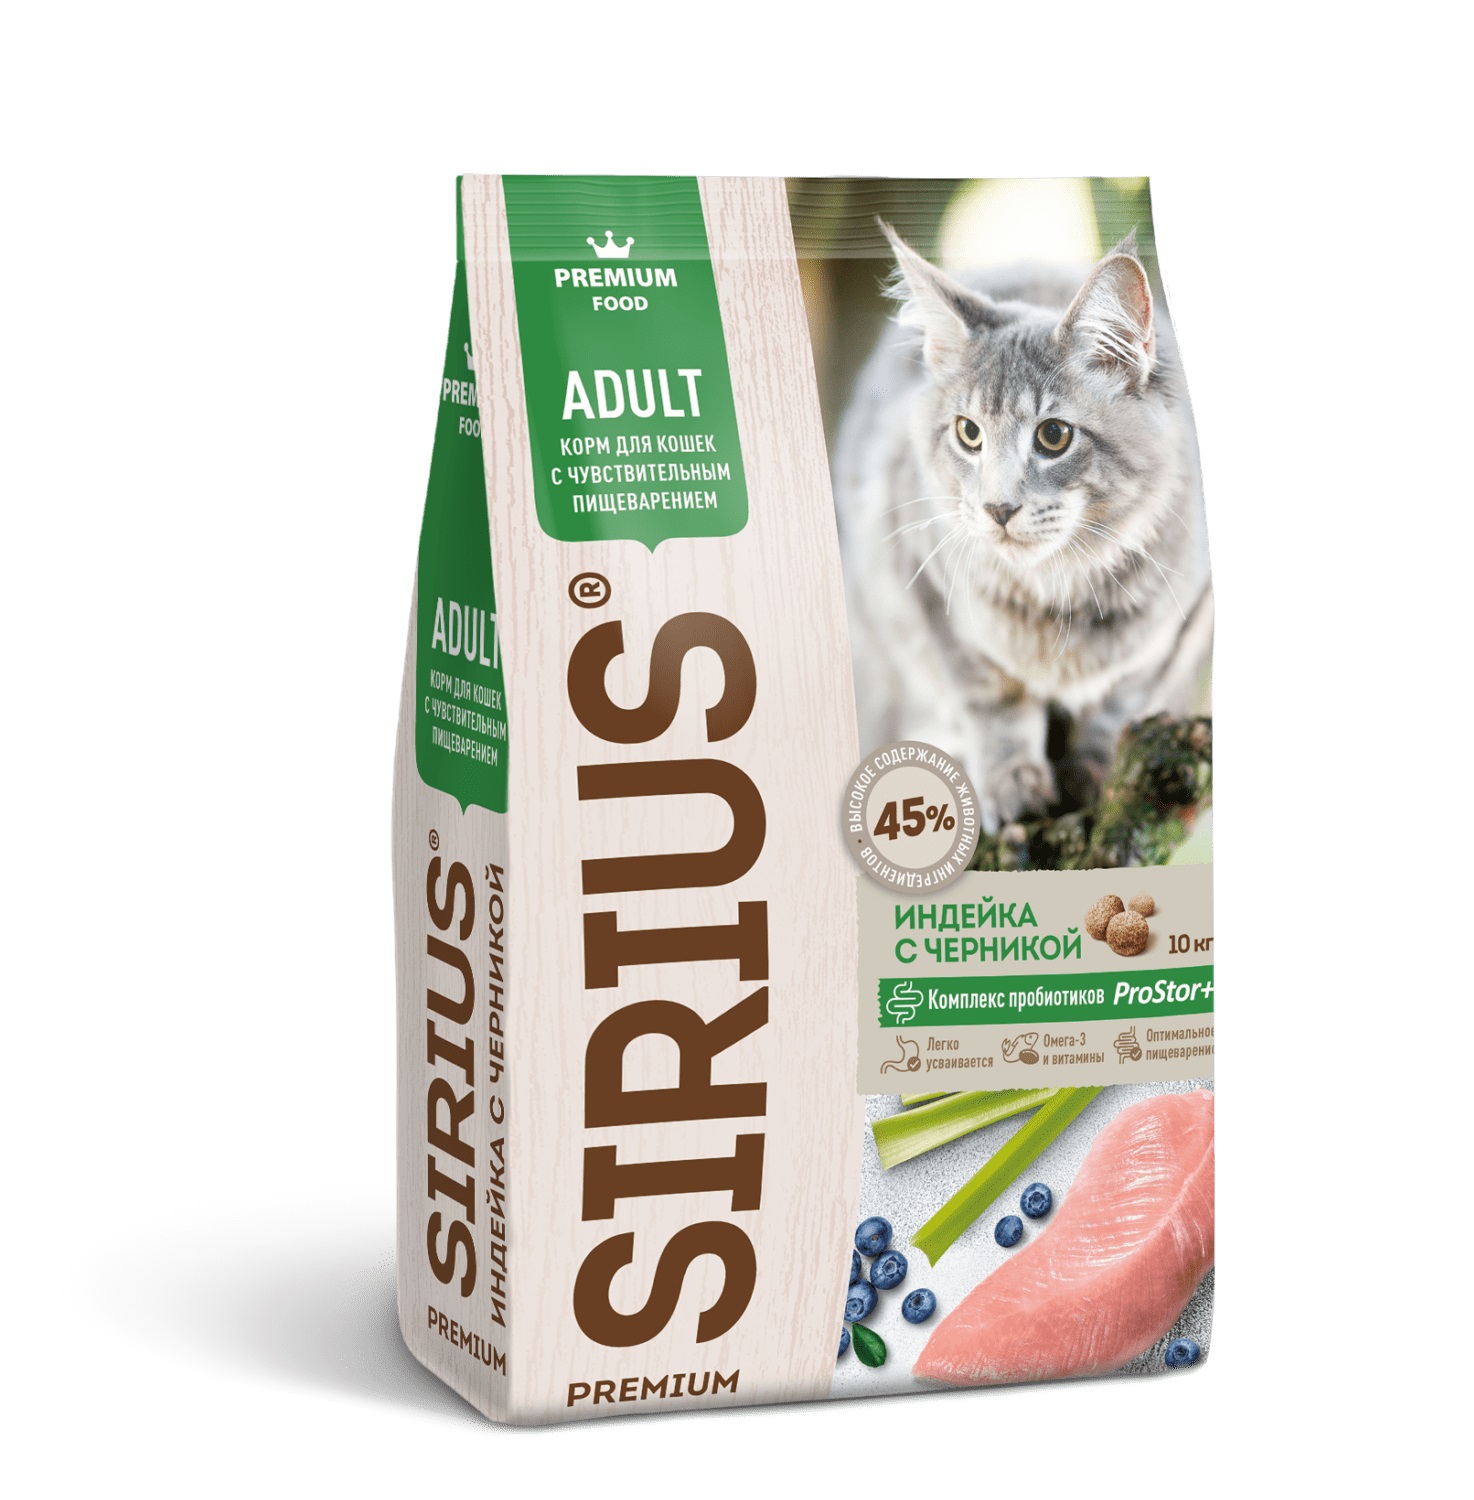 Сириус 10кг - для кошек Чувствительное пищеварение Индейка/Черника (Sirius)